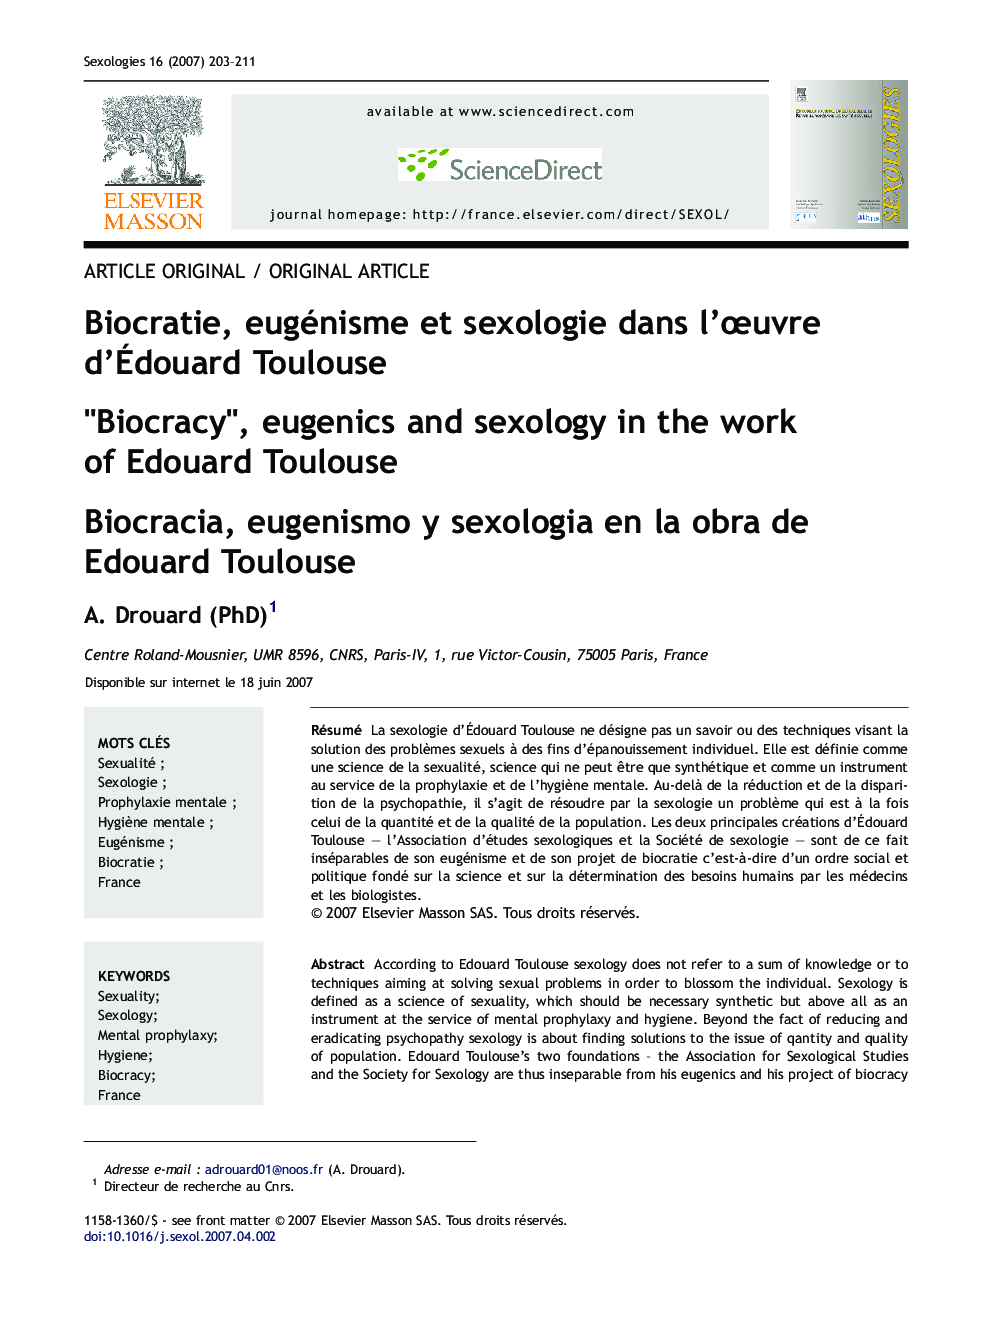 Biocratie, eugénisme et sexologie dans l'œuvre d'Édouard Toulouse